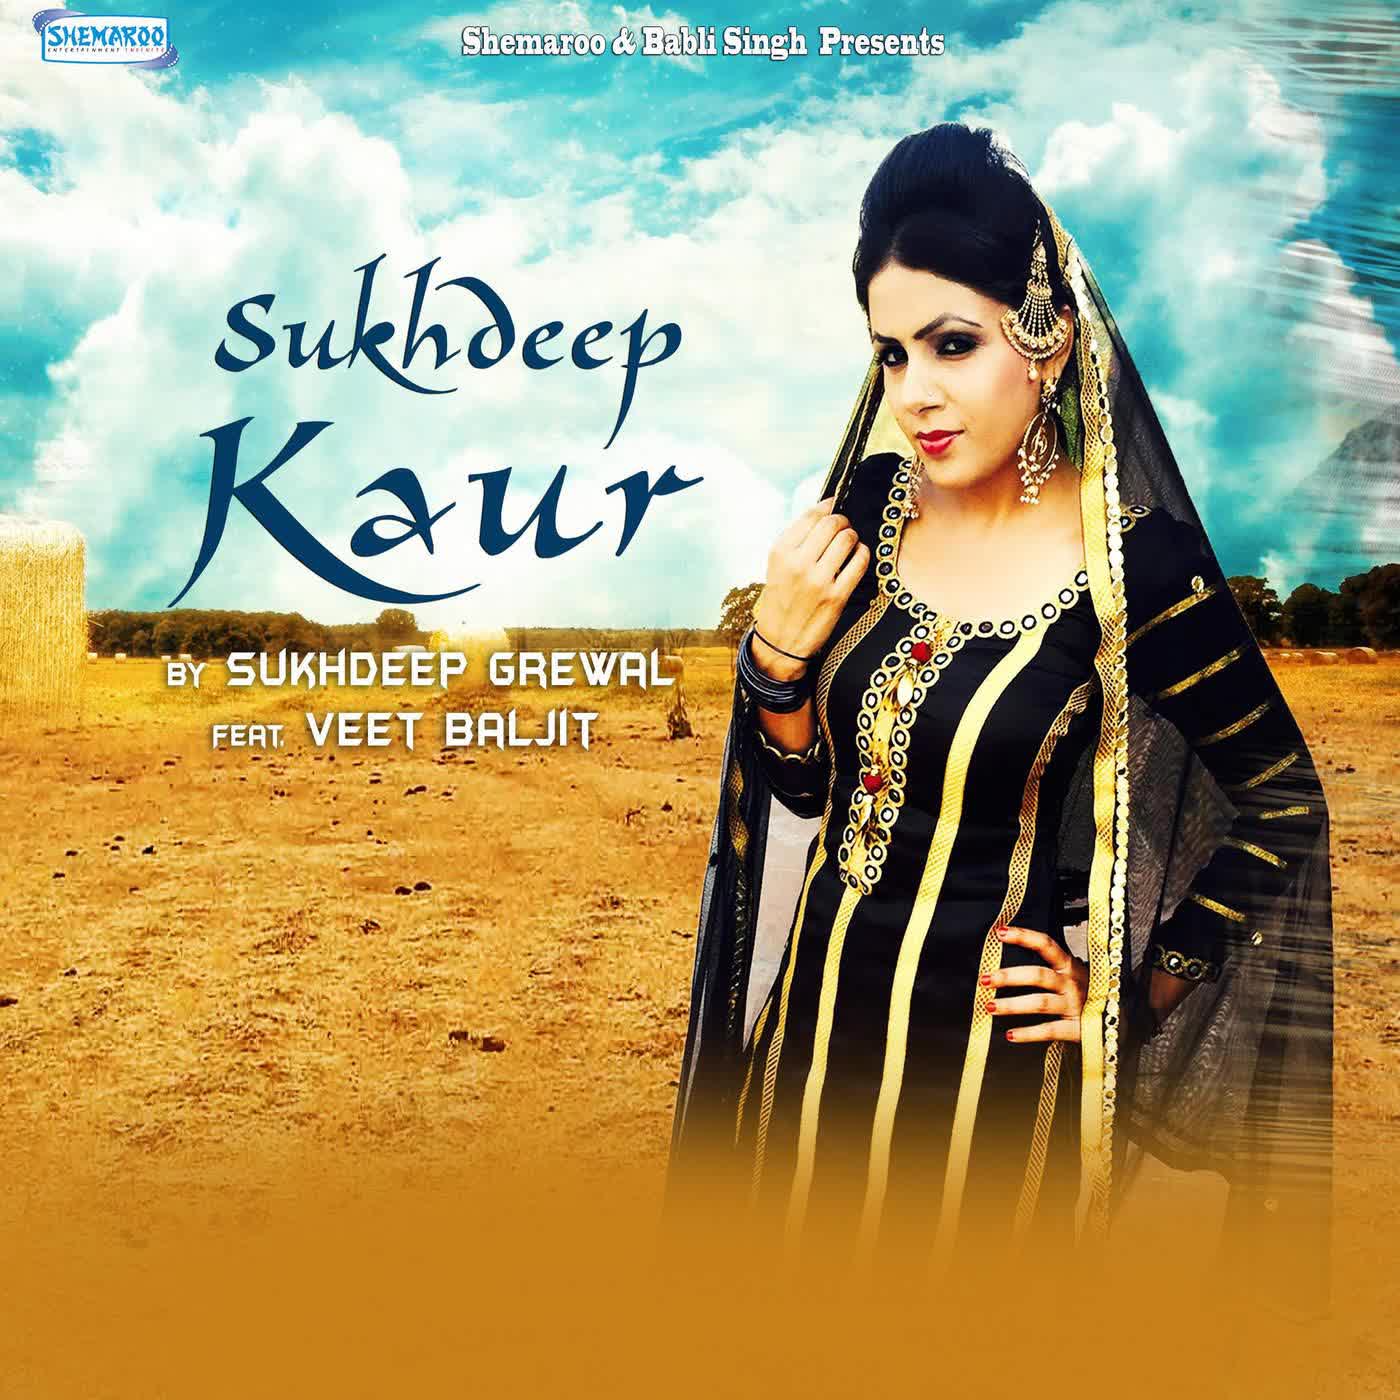 Sukhdeep Kaur Sukhdeep Grewal  Mp3 song download